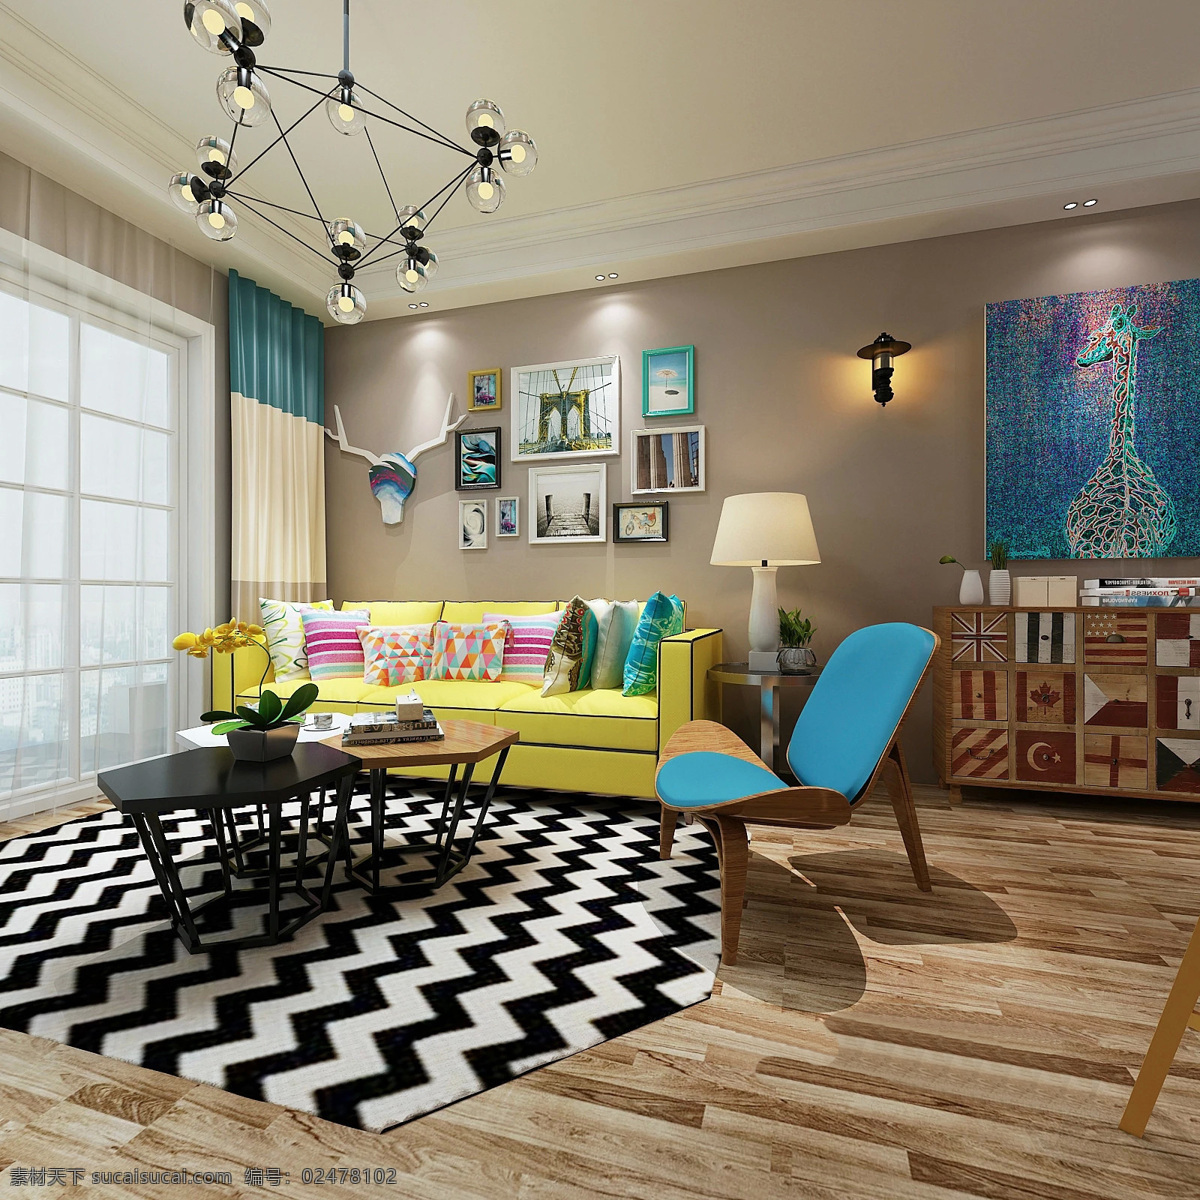 北欧 现代 客厅 照片 墙 效果图 别墅 单人凳子 黄色沙发 家装效果图 欧式 装修 室内设计 条纹地毯 现代装修 照片墙 装修实景图